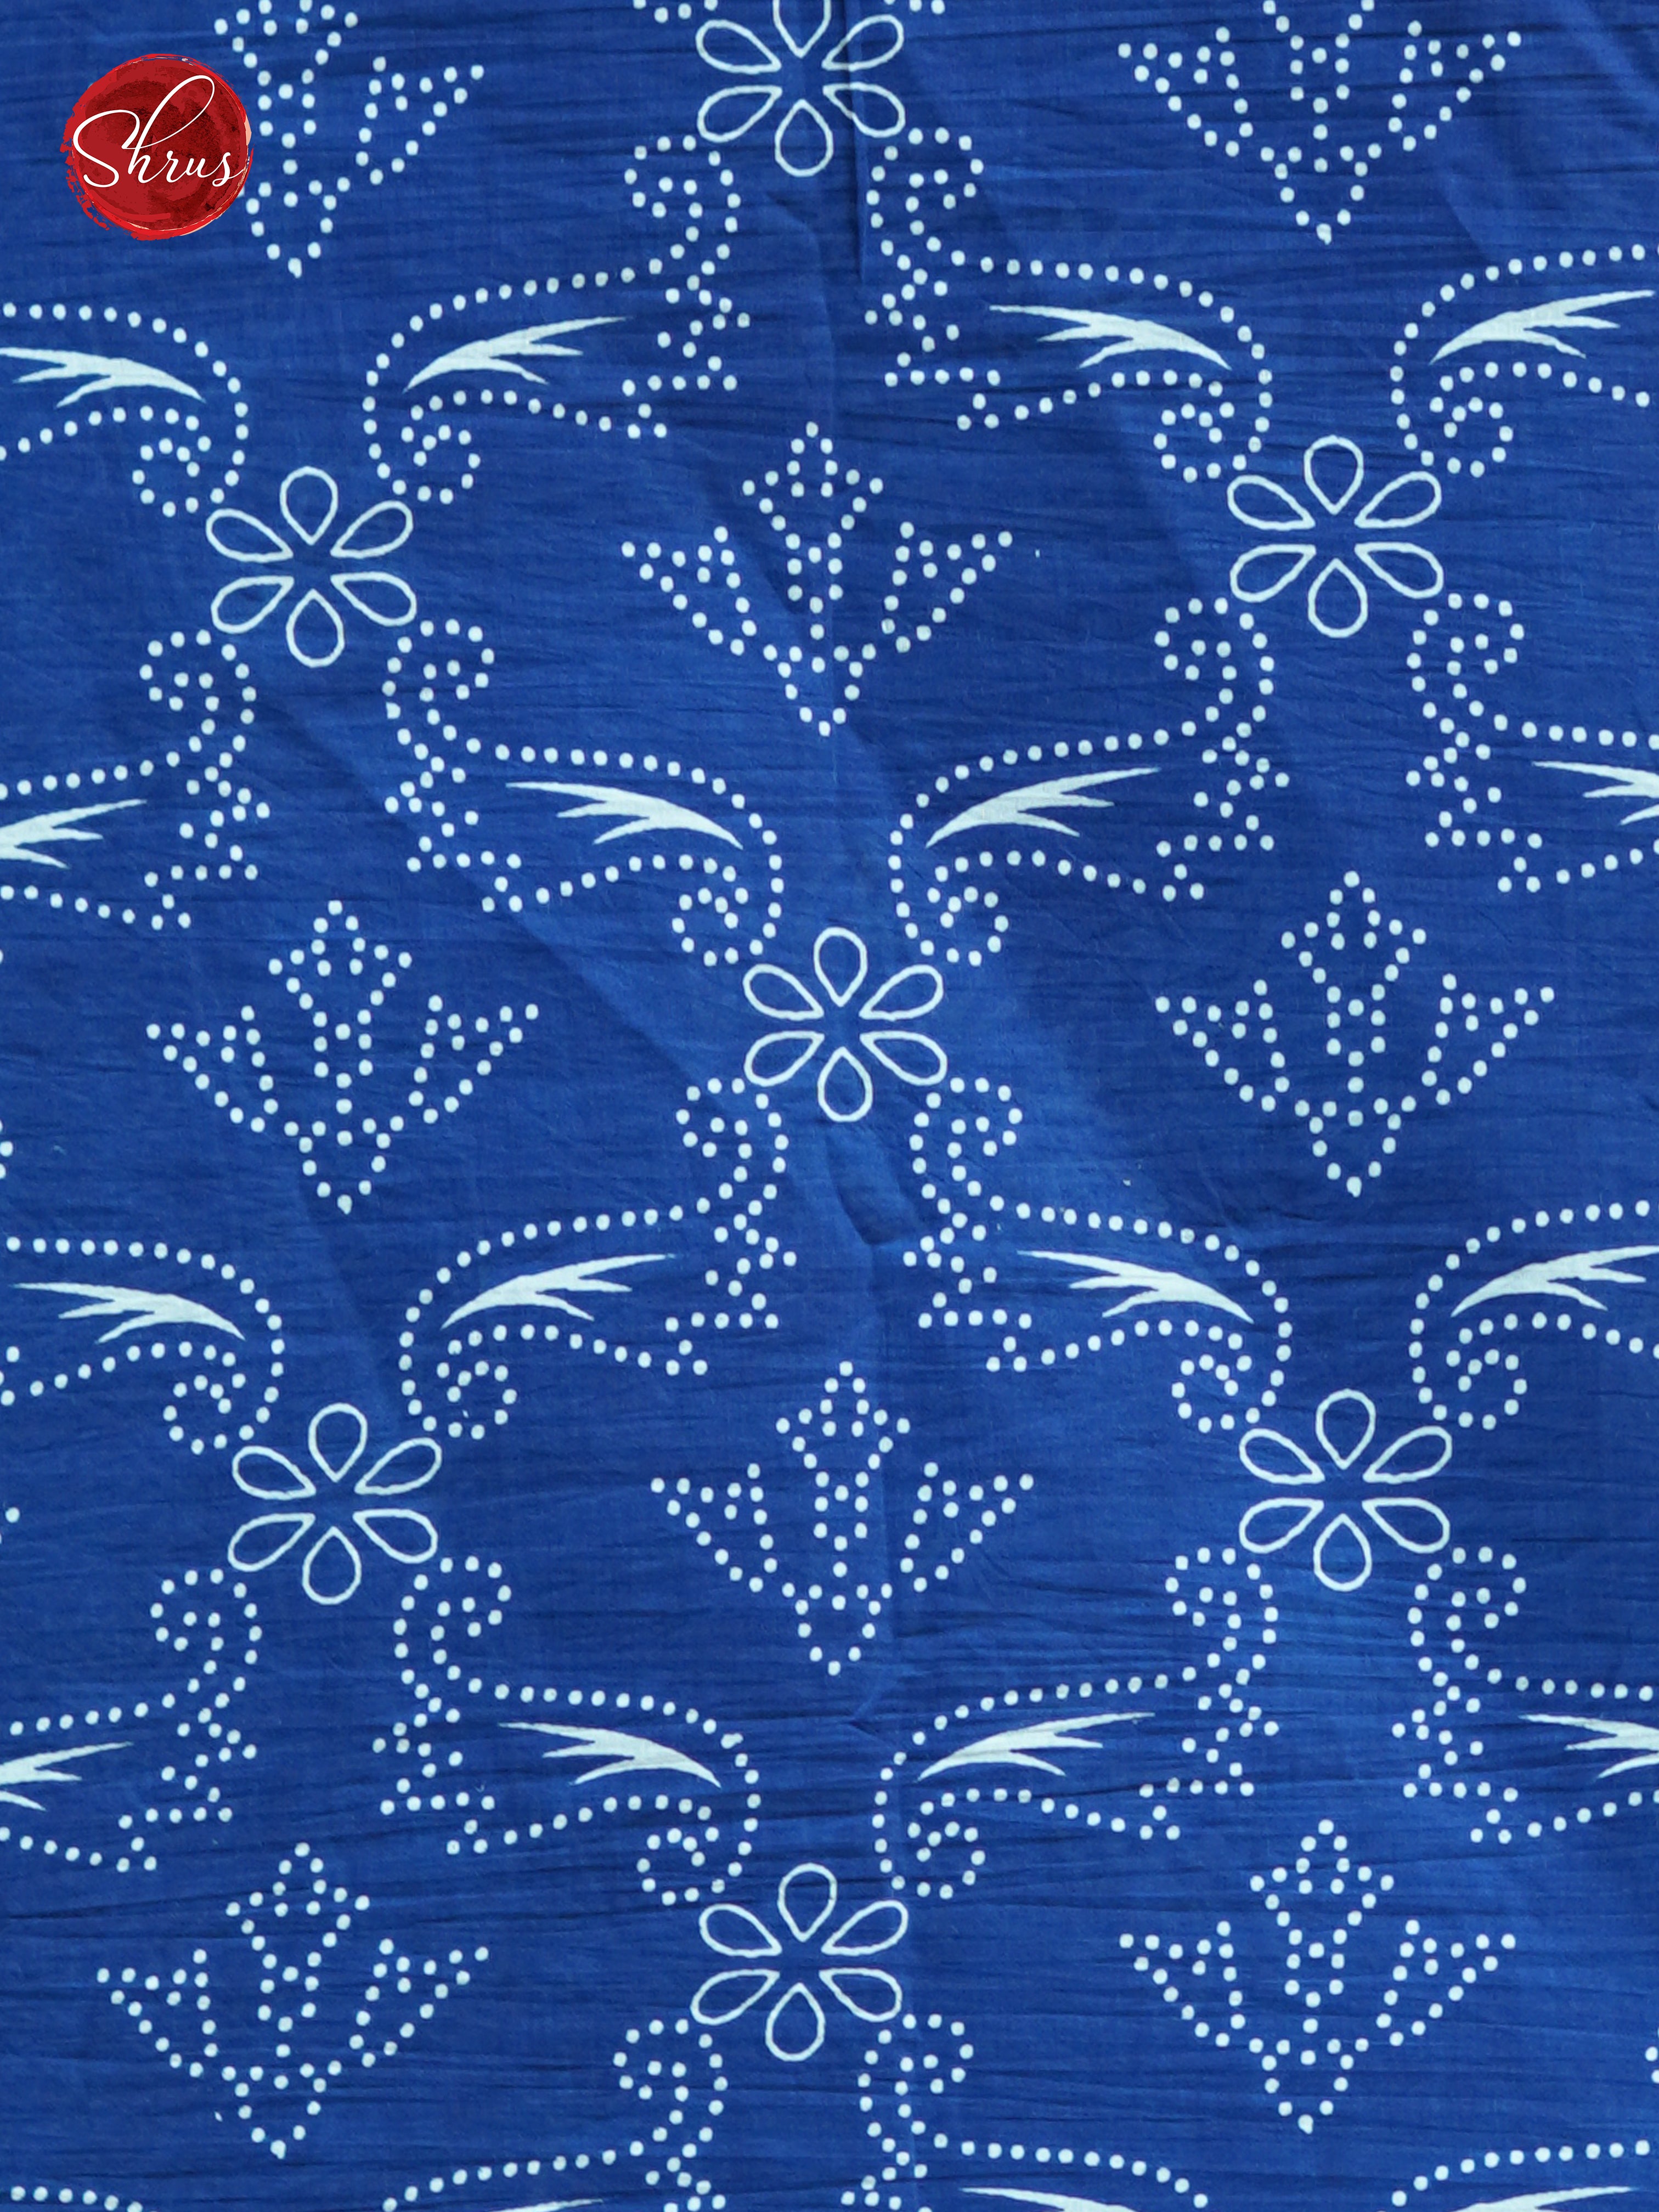 Blue(Single Tone) - Jaipur cotton - Shop on ShrusEternity.com